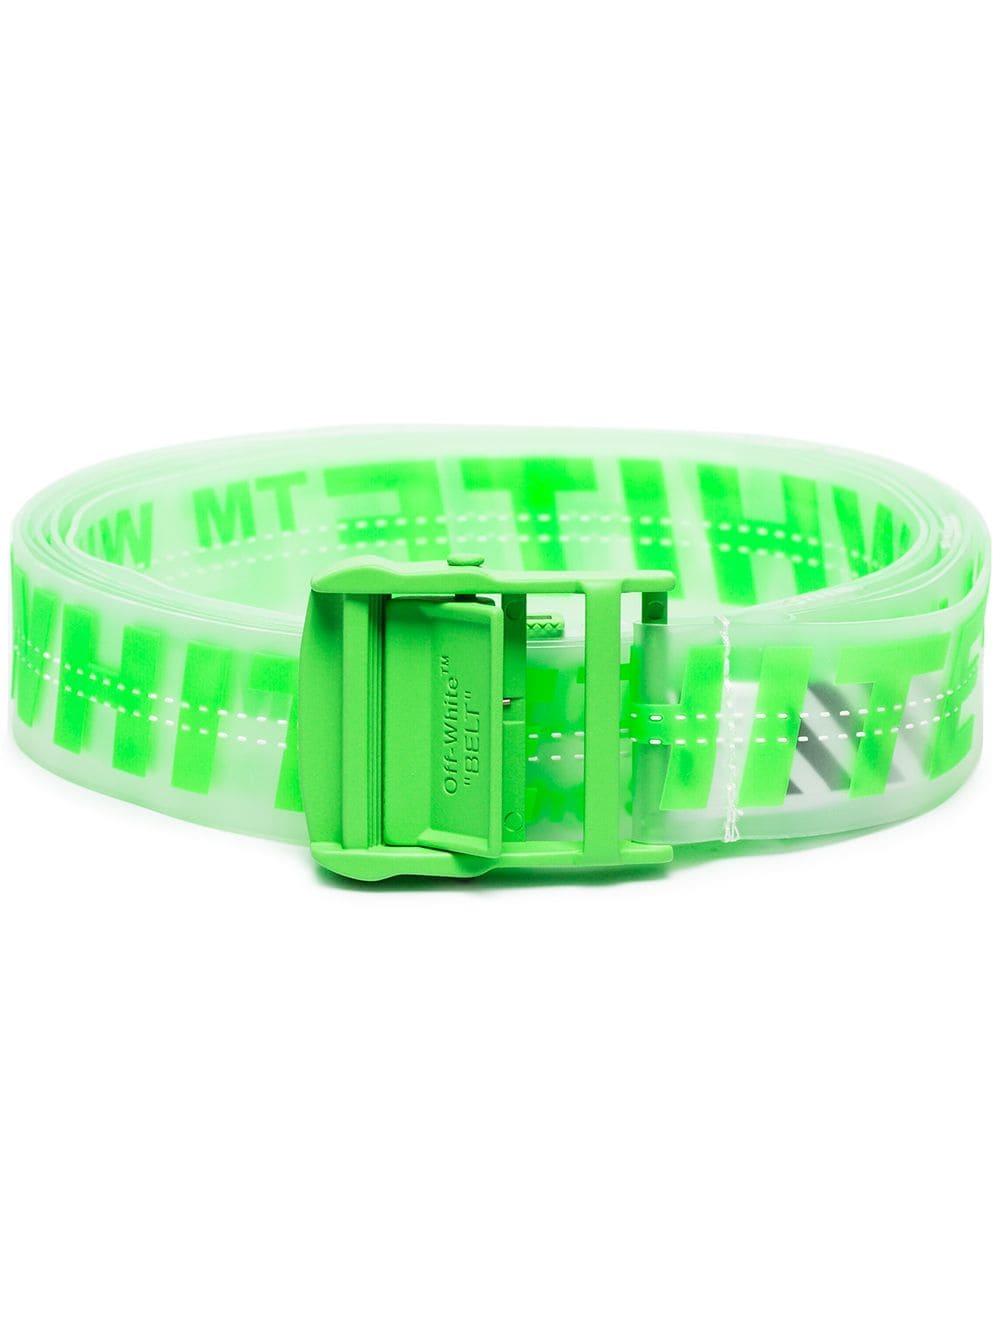 Off-White c/o Virgil Abloh Neon Green Industrial Logo Rubber Belt for Men -  Lyst